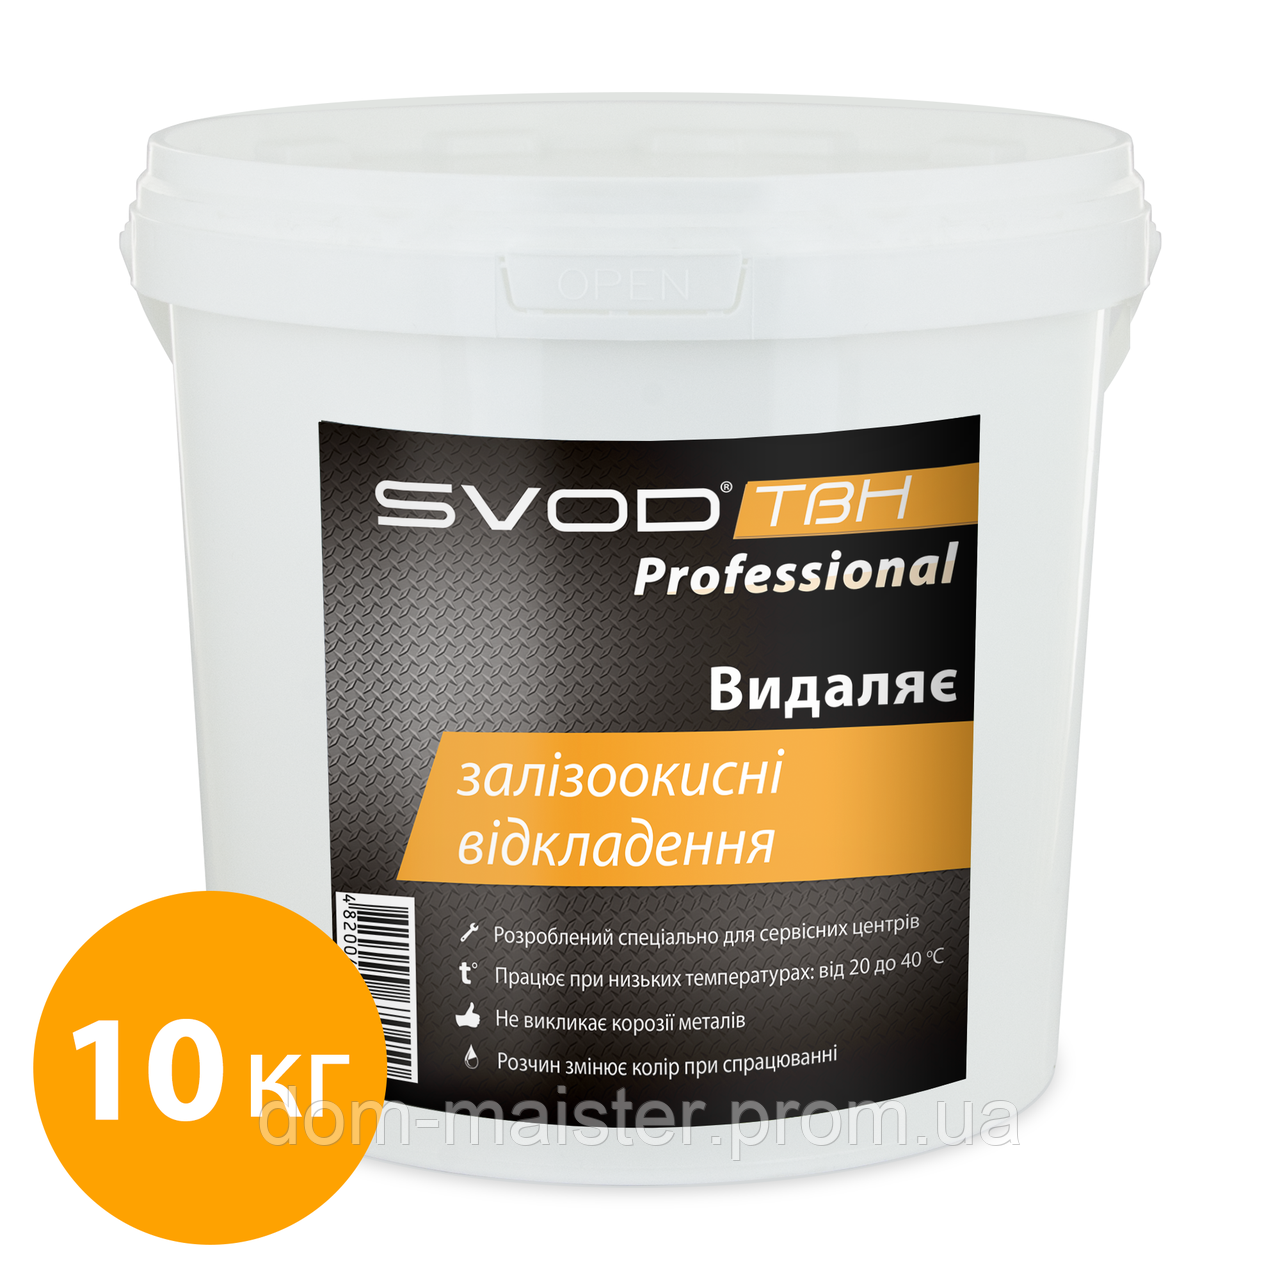 СВОД «SVOD-ТВН» Professional для видалення залізоокисних відкладень, 10 кг